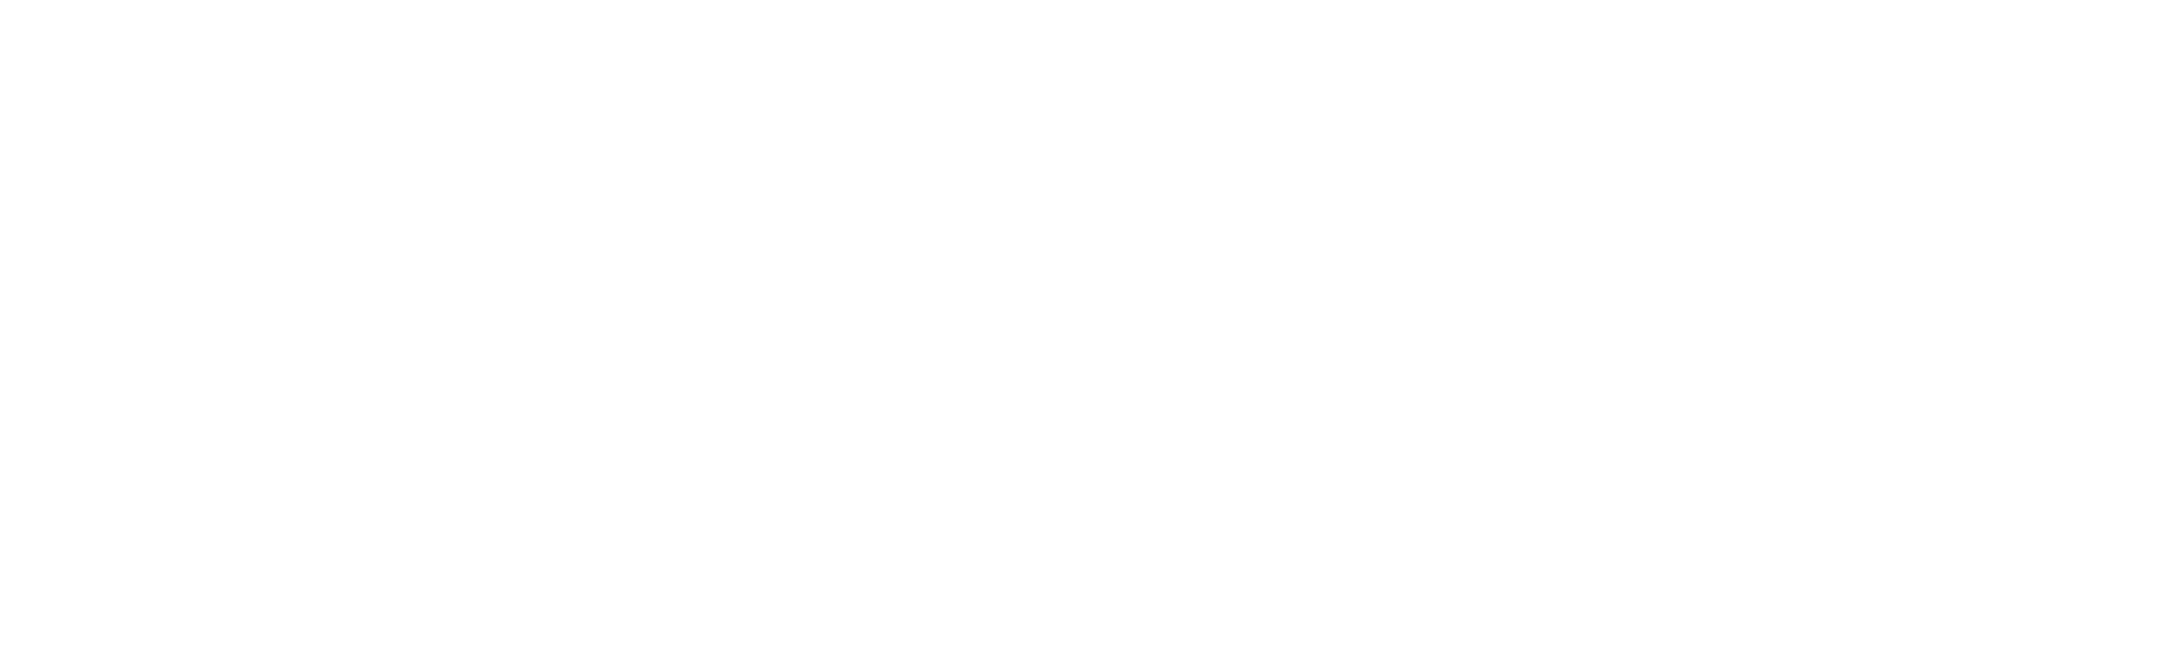 מהו תהליך שריפת המטבעות? - FSFPAY.com